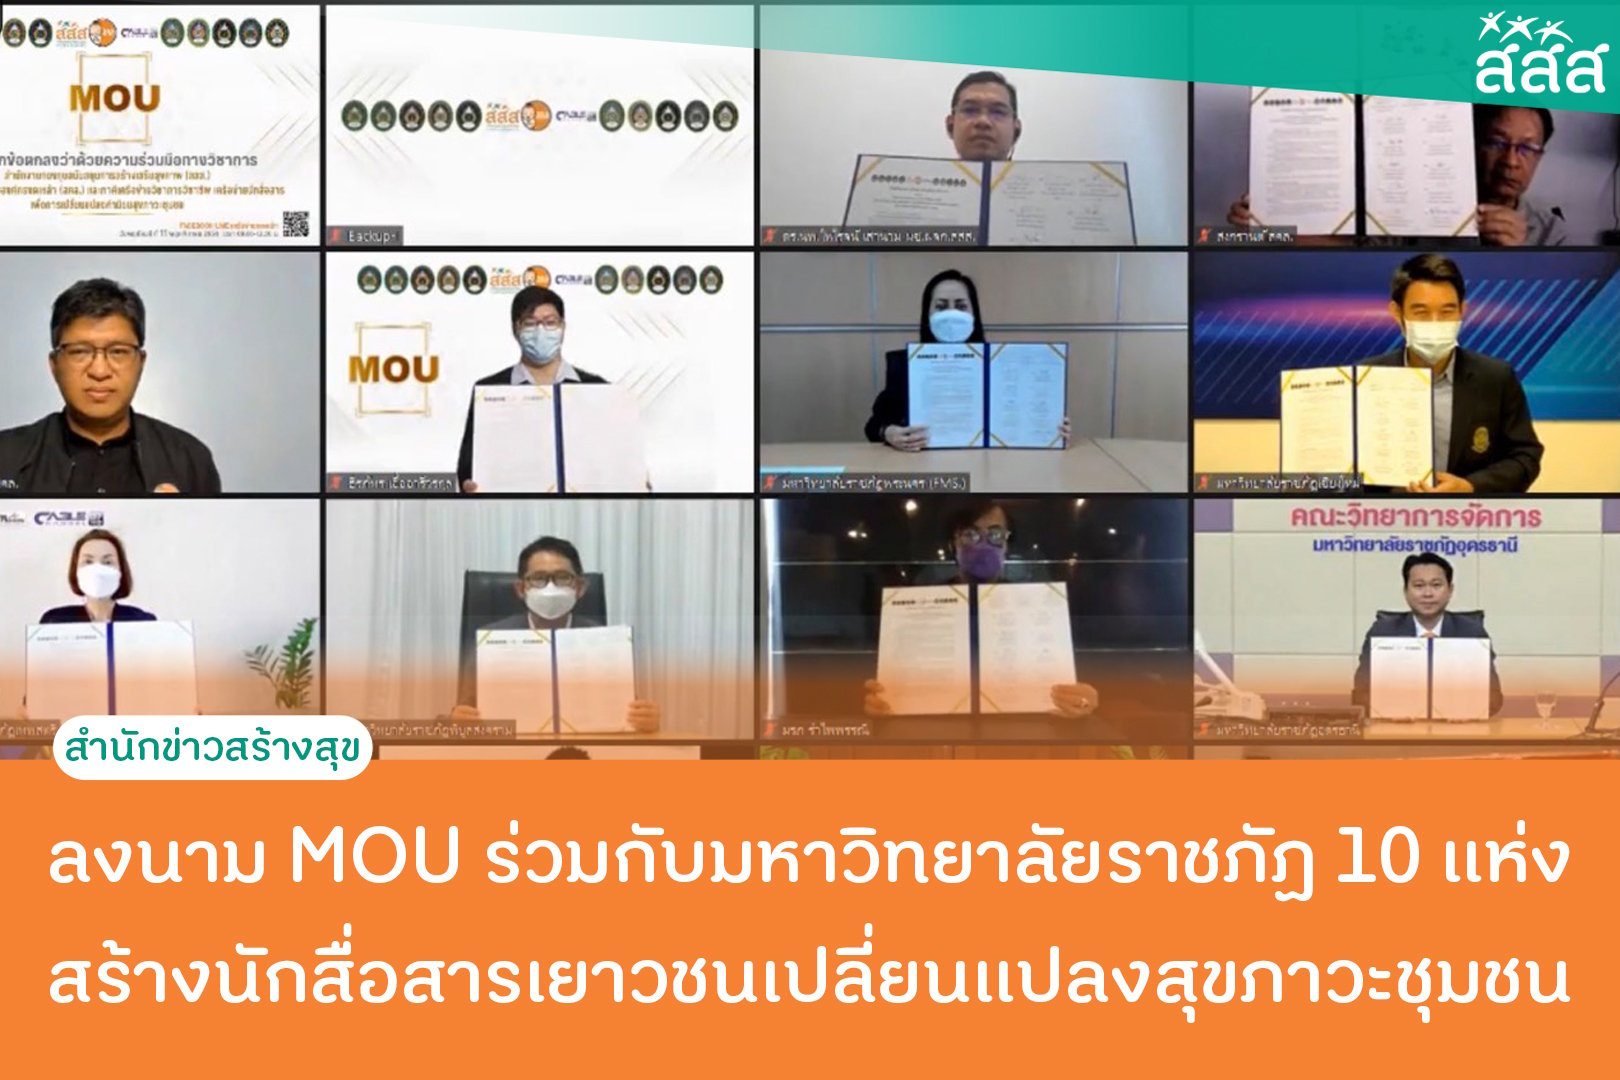 ลงนาม MOU ร่วมกับมหาวิทยาลัยราชภัฎ 10 เเห่ง สร้างนักสื่อสารเยาวชนเปลี่ยนเเปลงสุขภาวะชุมชน  thaihealth